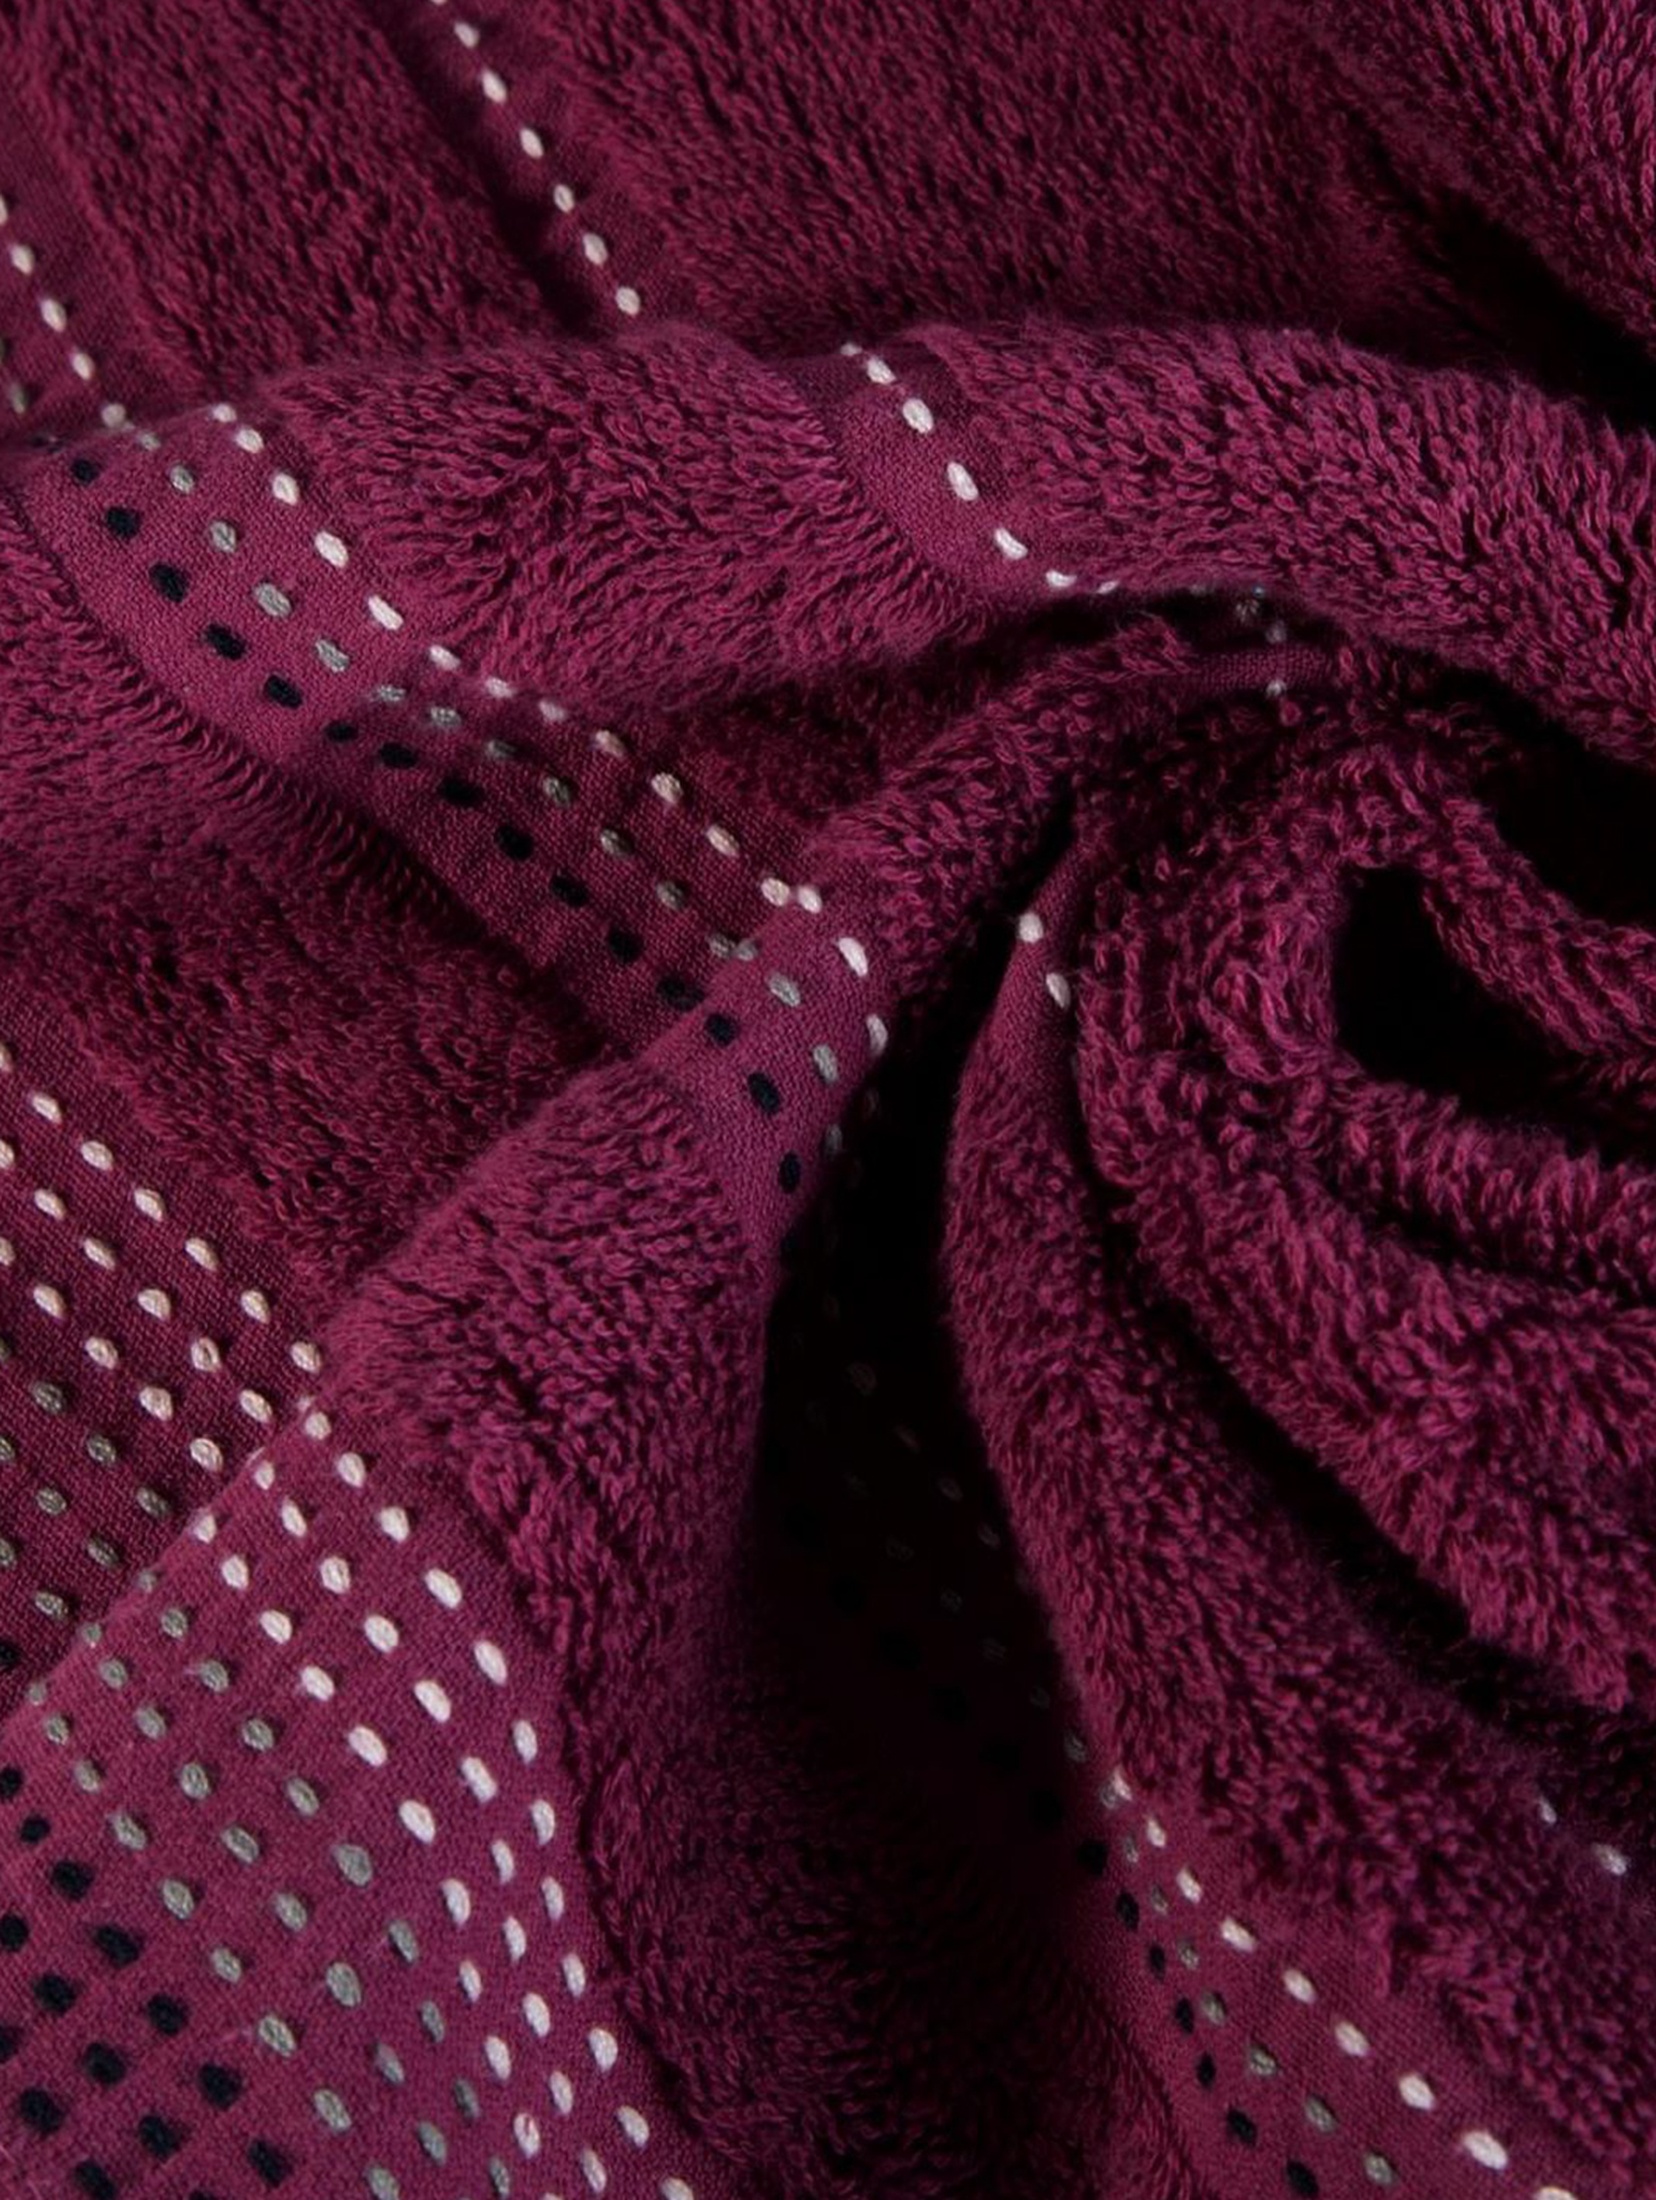 Ręcznik Pola 50x90 cm - fioletowy